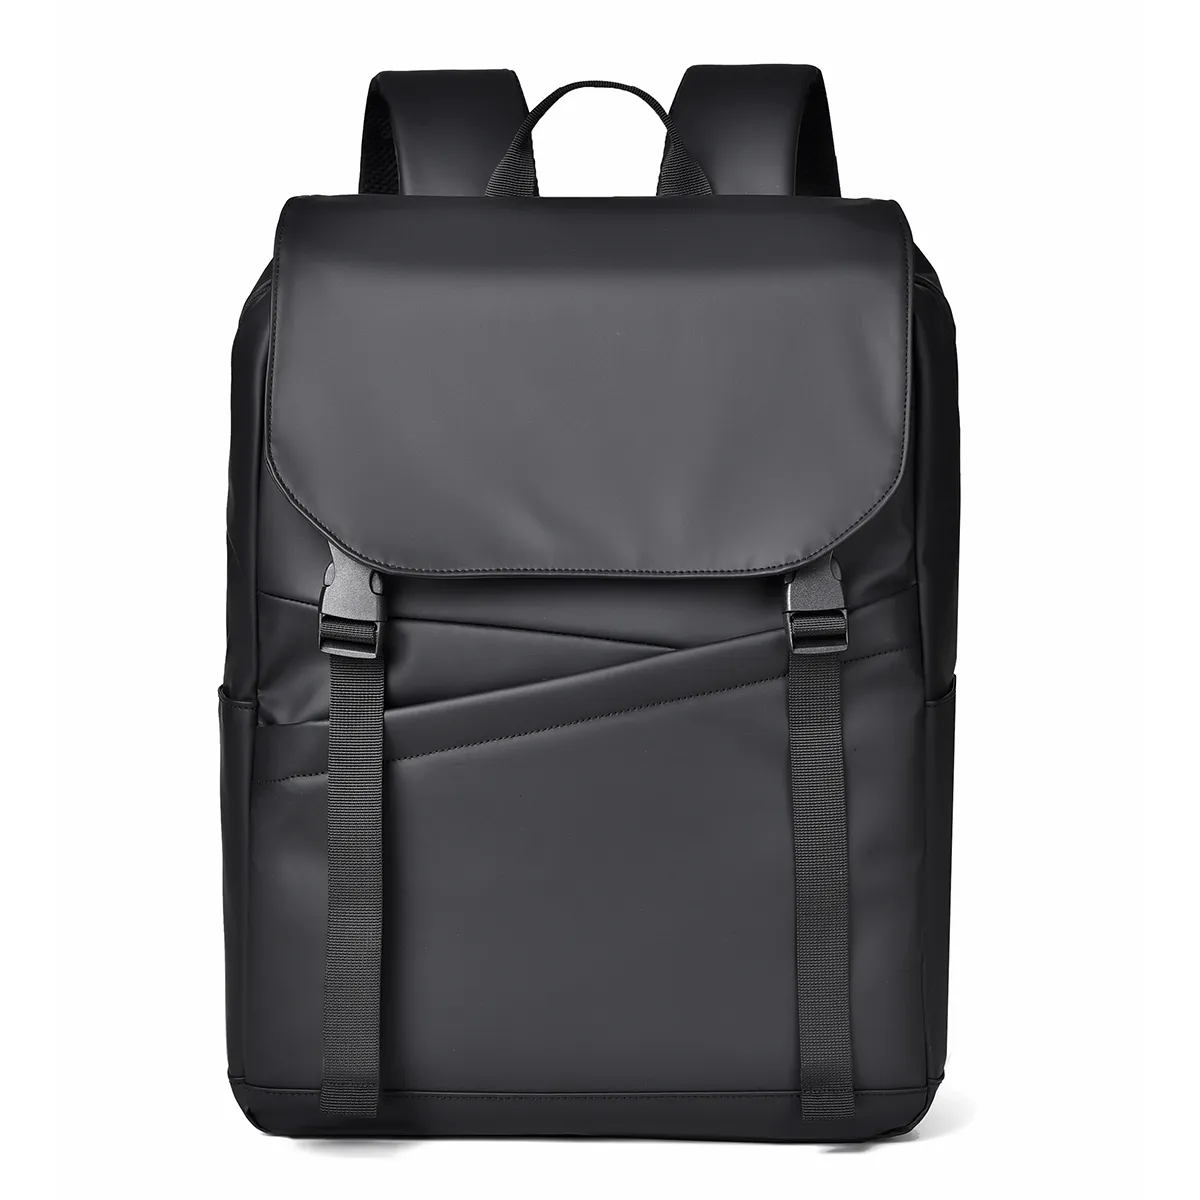 Iş büyük kapasiteli erkek ve kadın sırt çantası erkekler için su geçirmez laptop çantası öğrenci okul sırt çantası